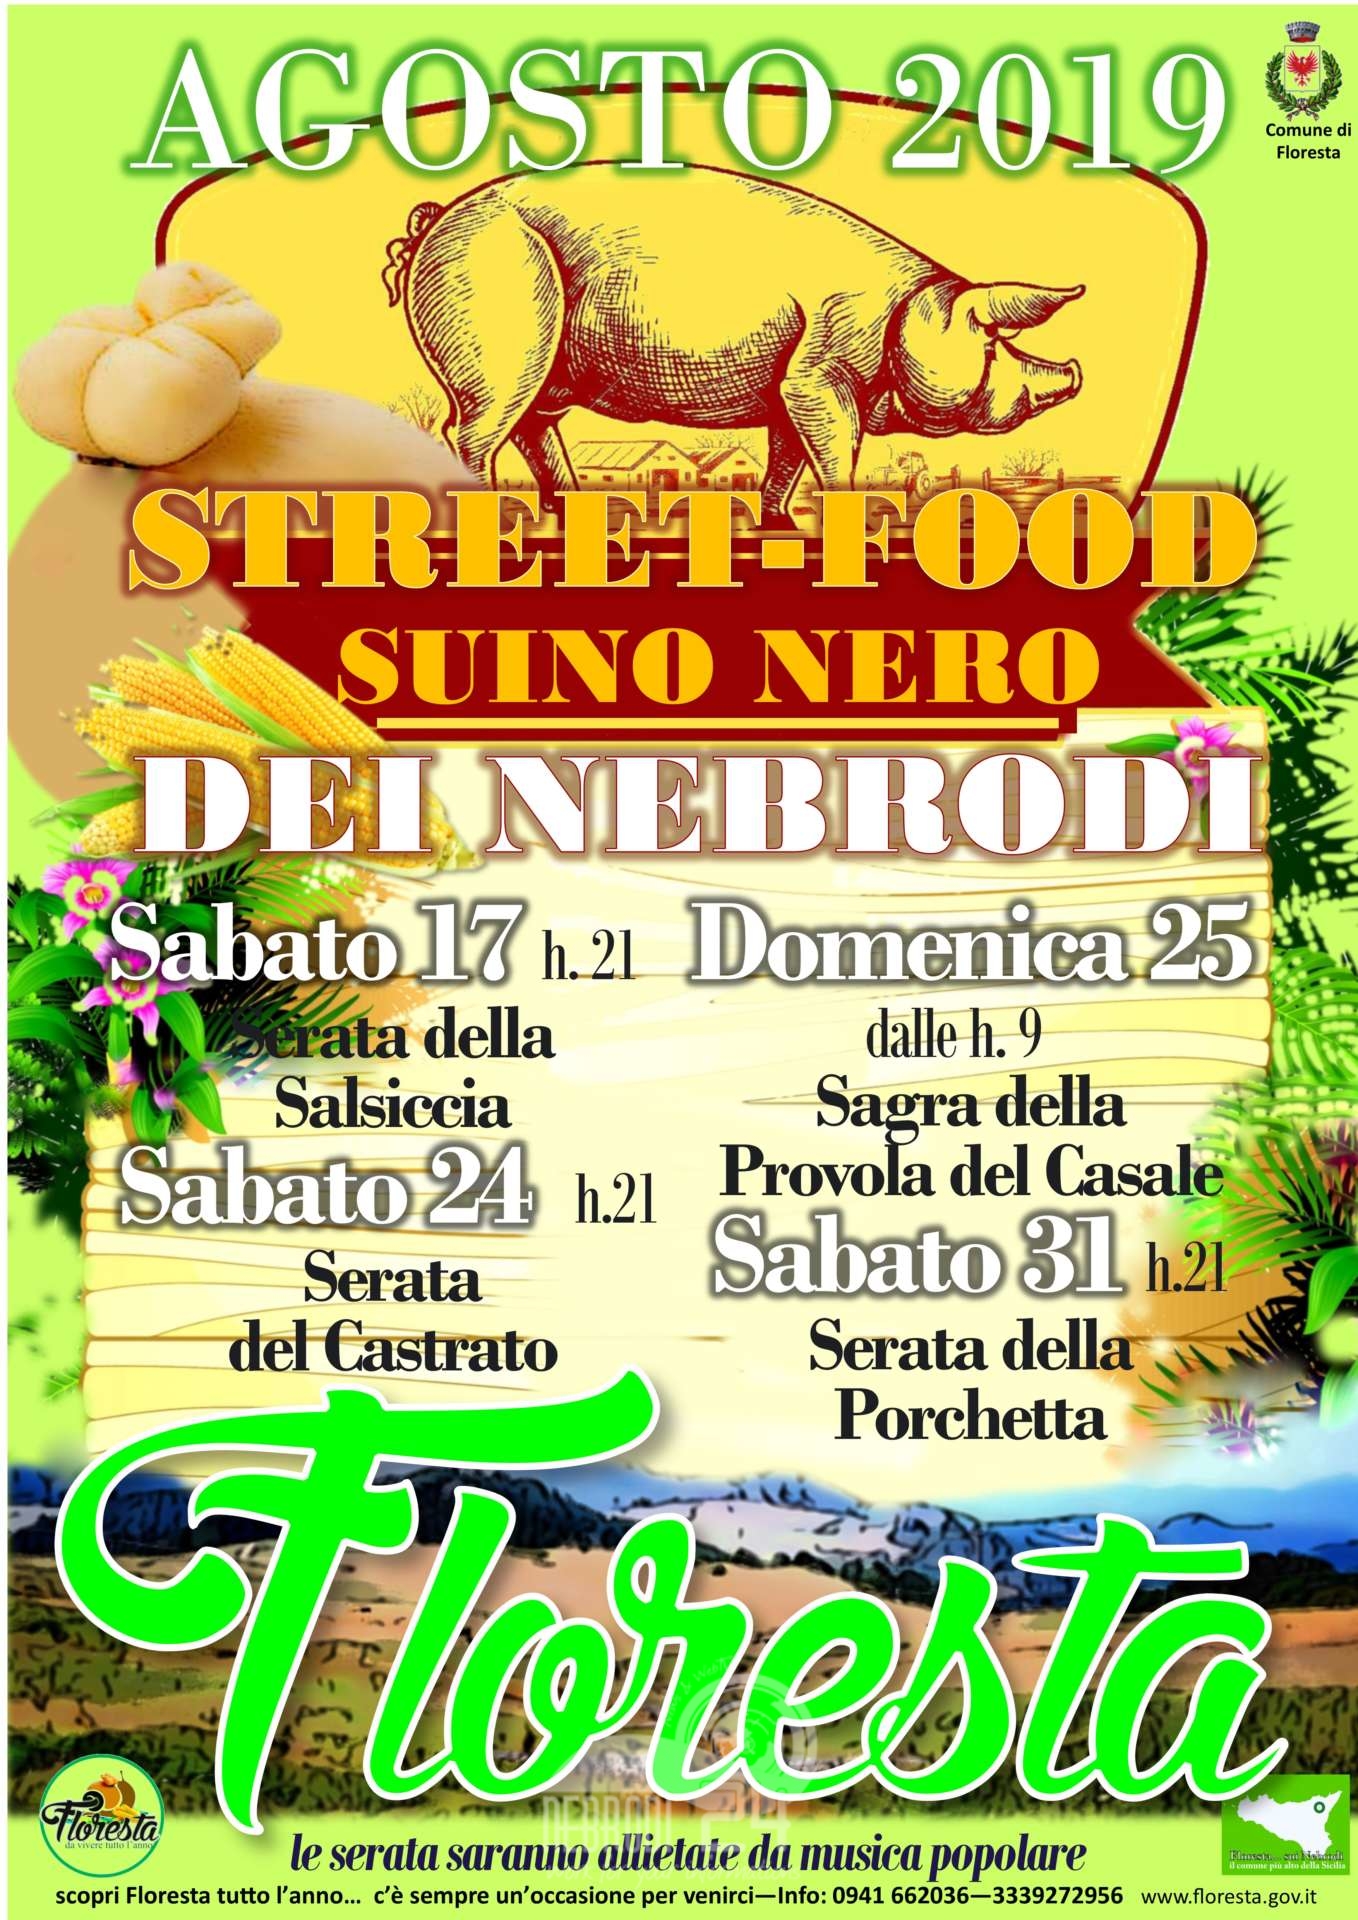 Floresta – Quattro giornate dedicate allo street-food